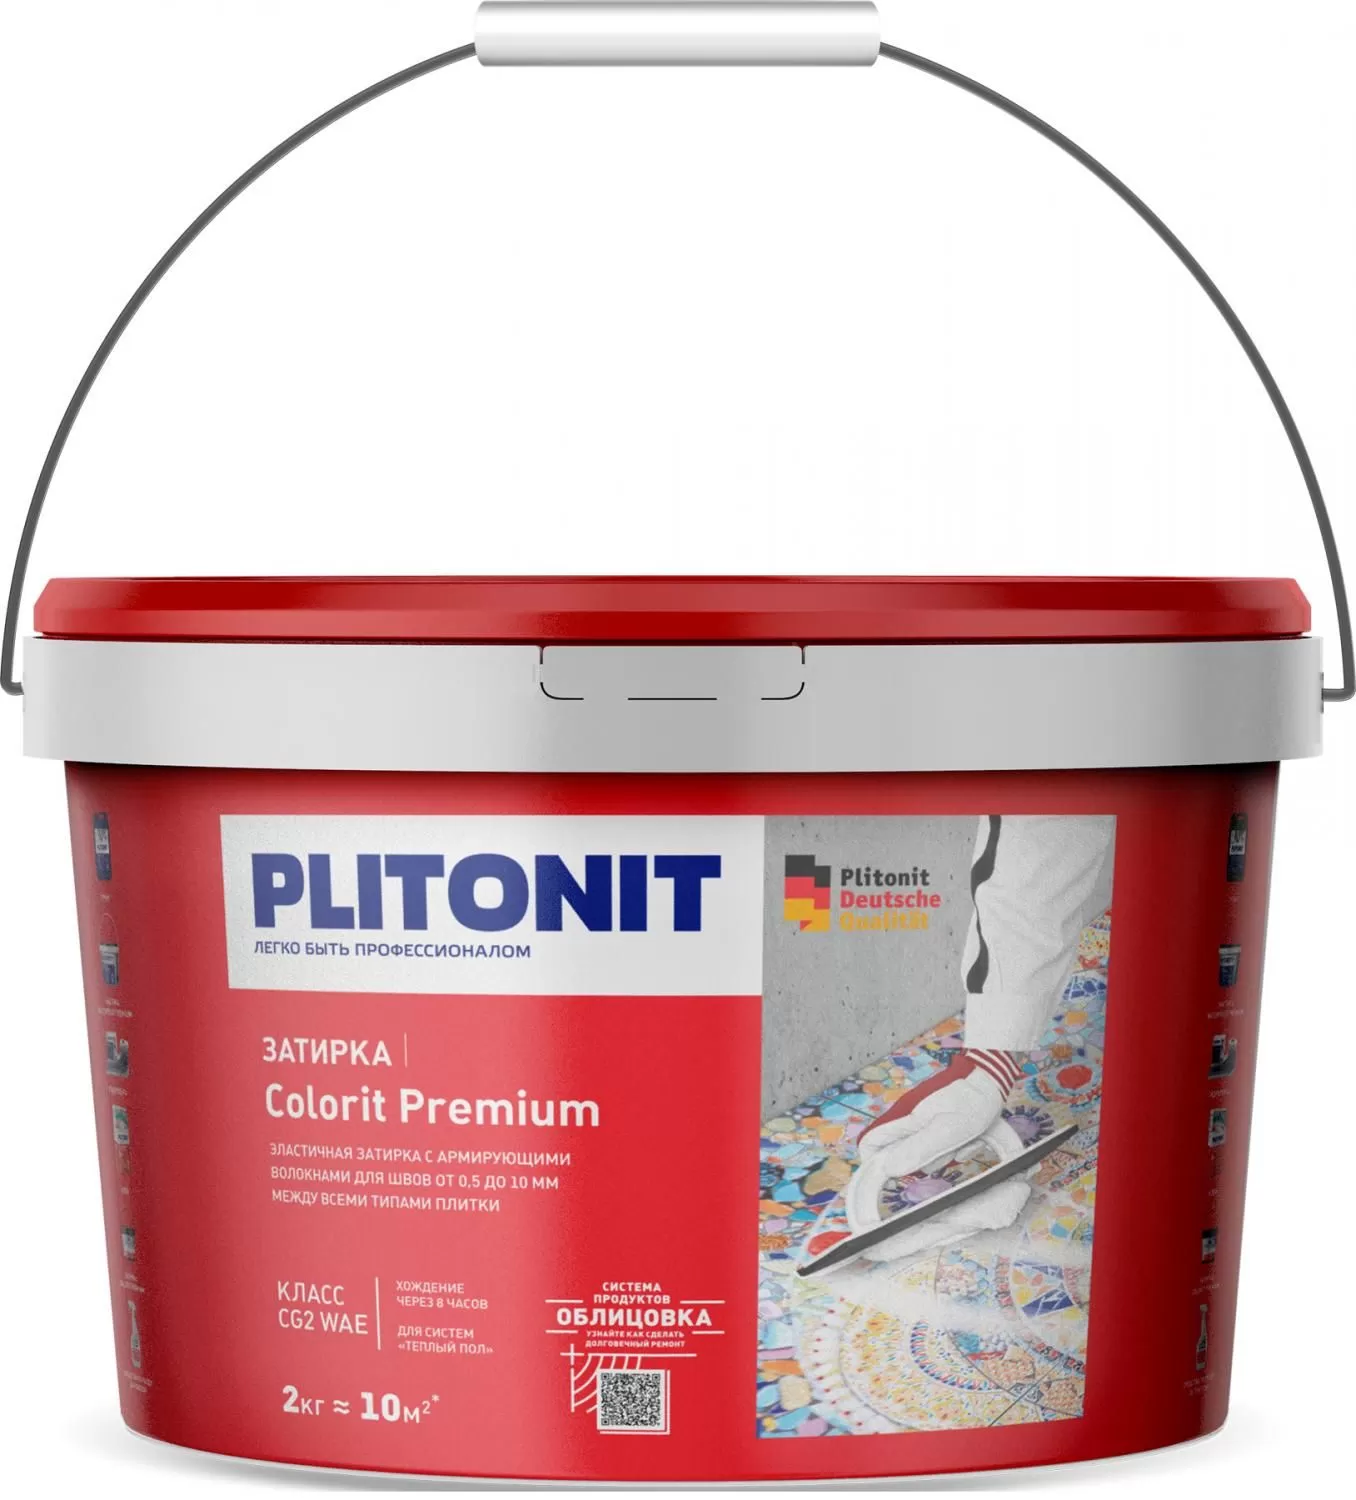 Купить Затирка Plitonit Colorit Premium темно-бежевая 2 кг цементная